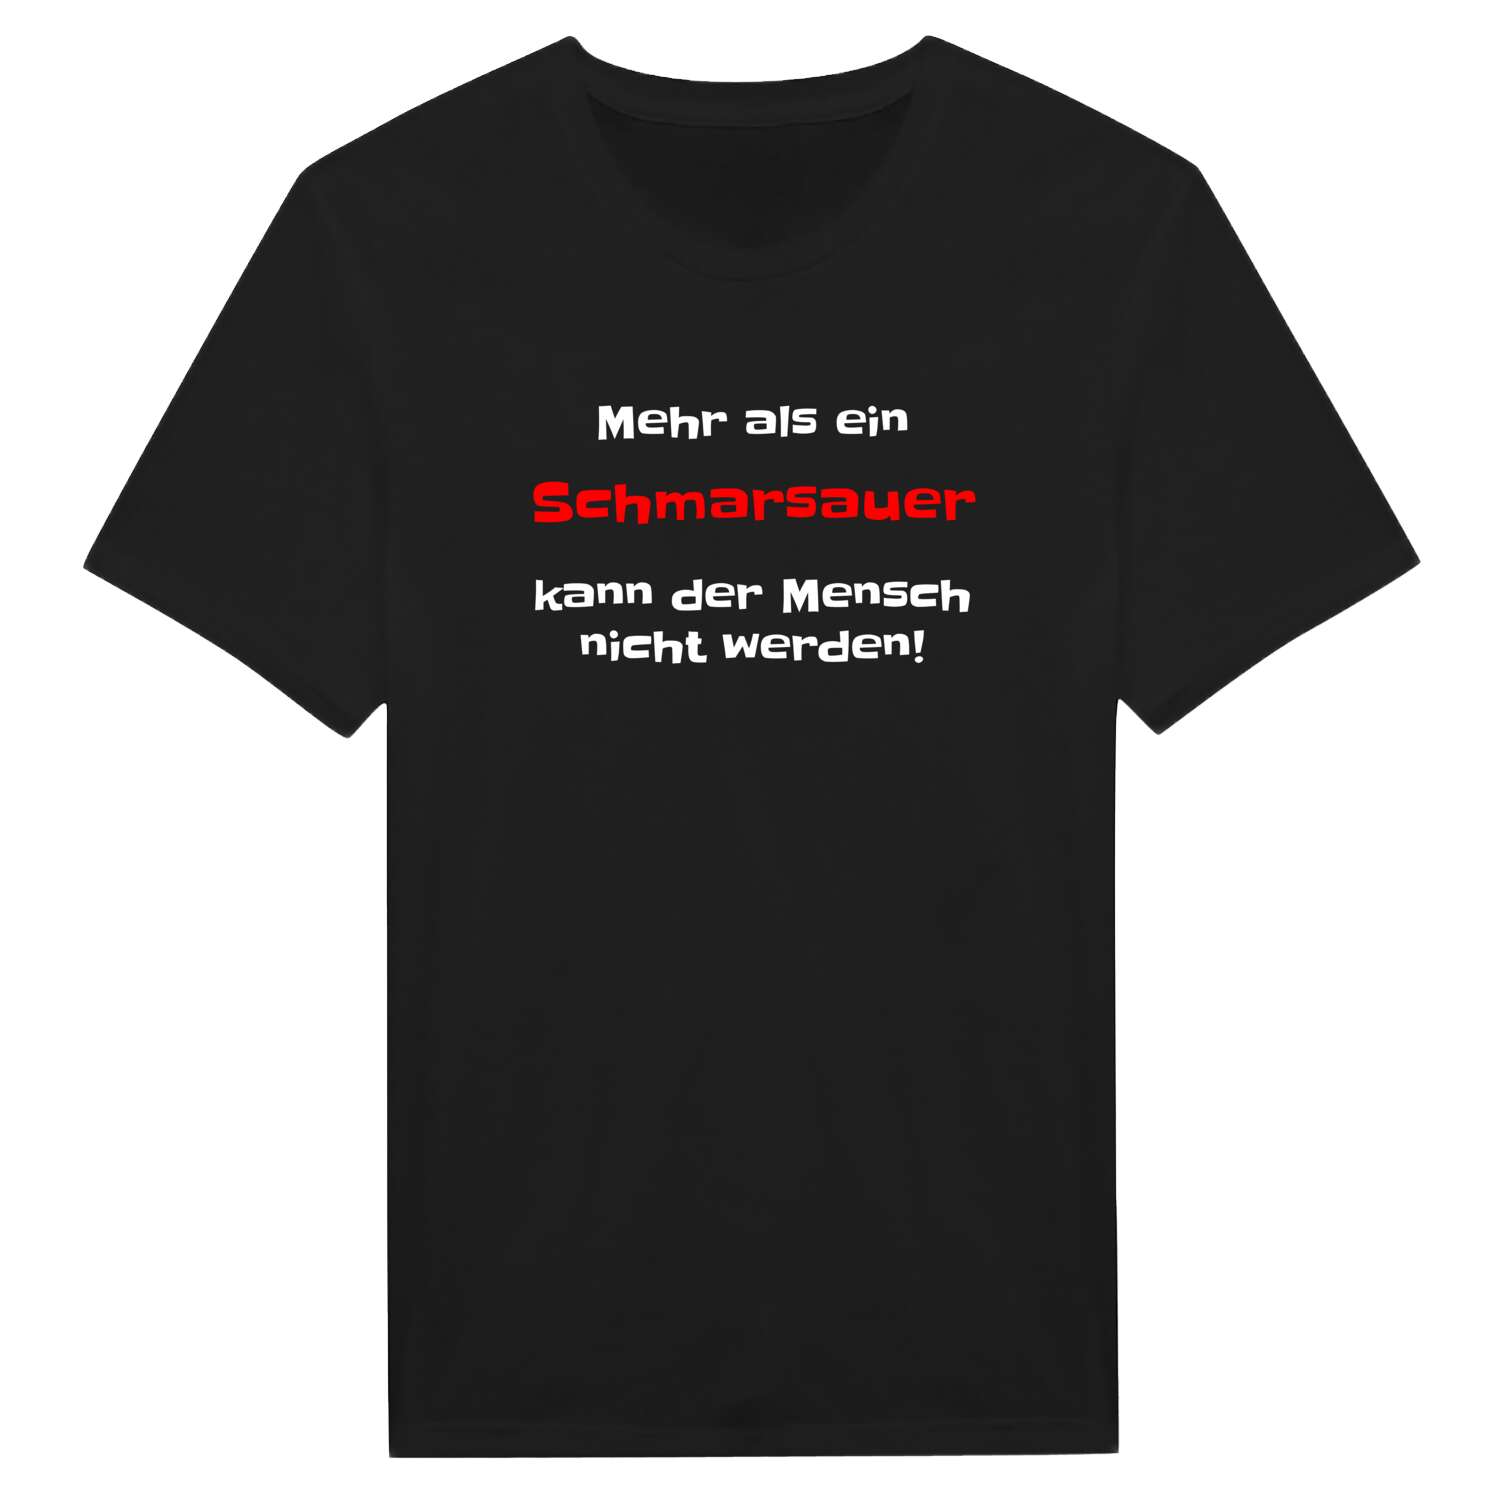 Schmarsau T-Shirt »Mehr als ein«